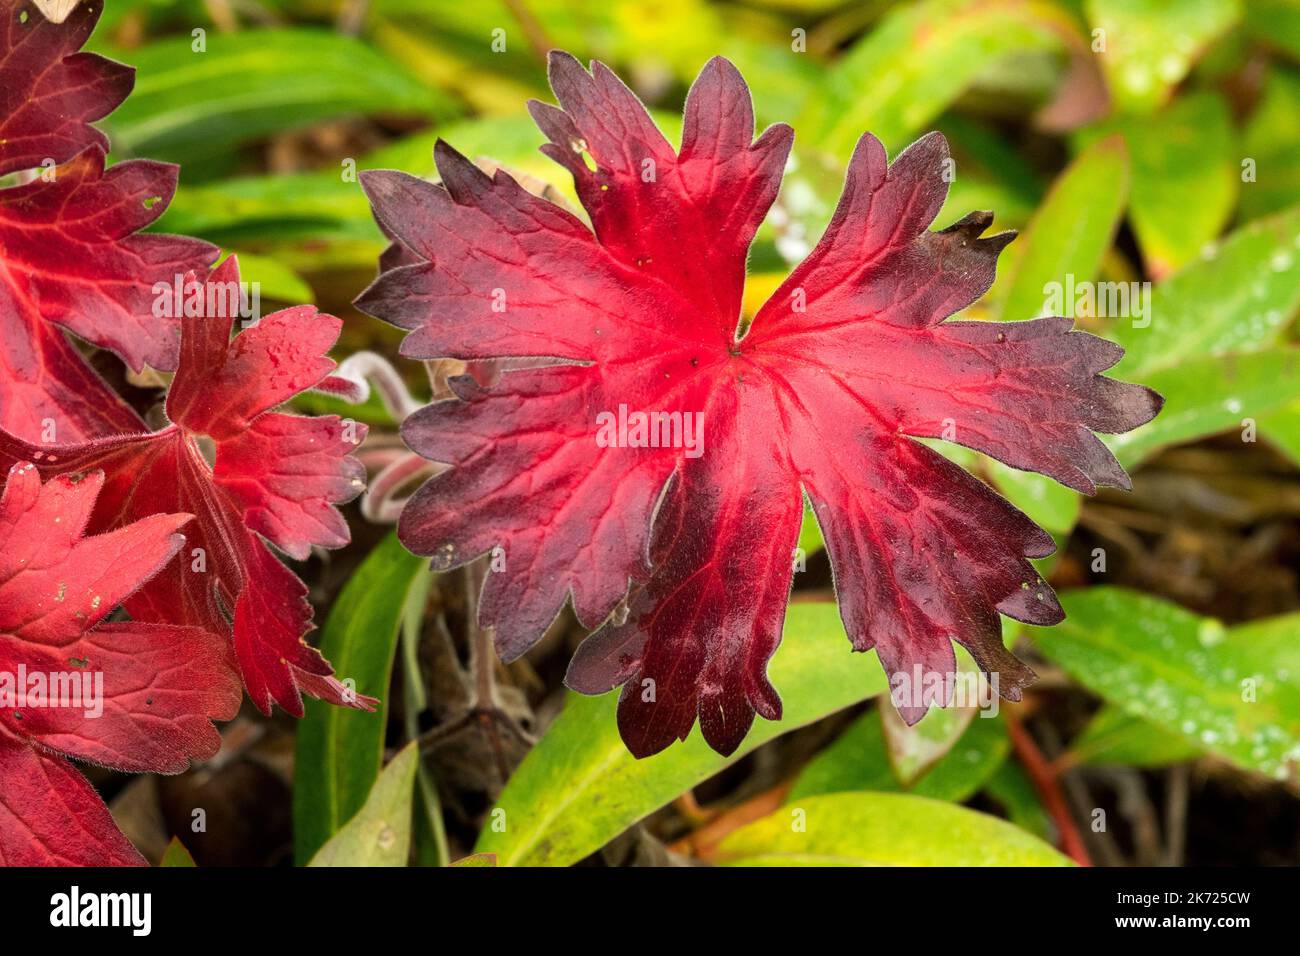 Hardy, Geraniums, Leaves, Autumn, Colour, Red Geranium wlassovianum, Cranesbill, Geranium, Dark Reddish leaf Stock Photo